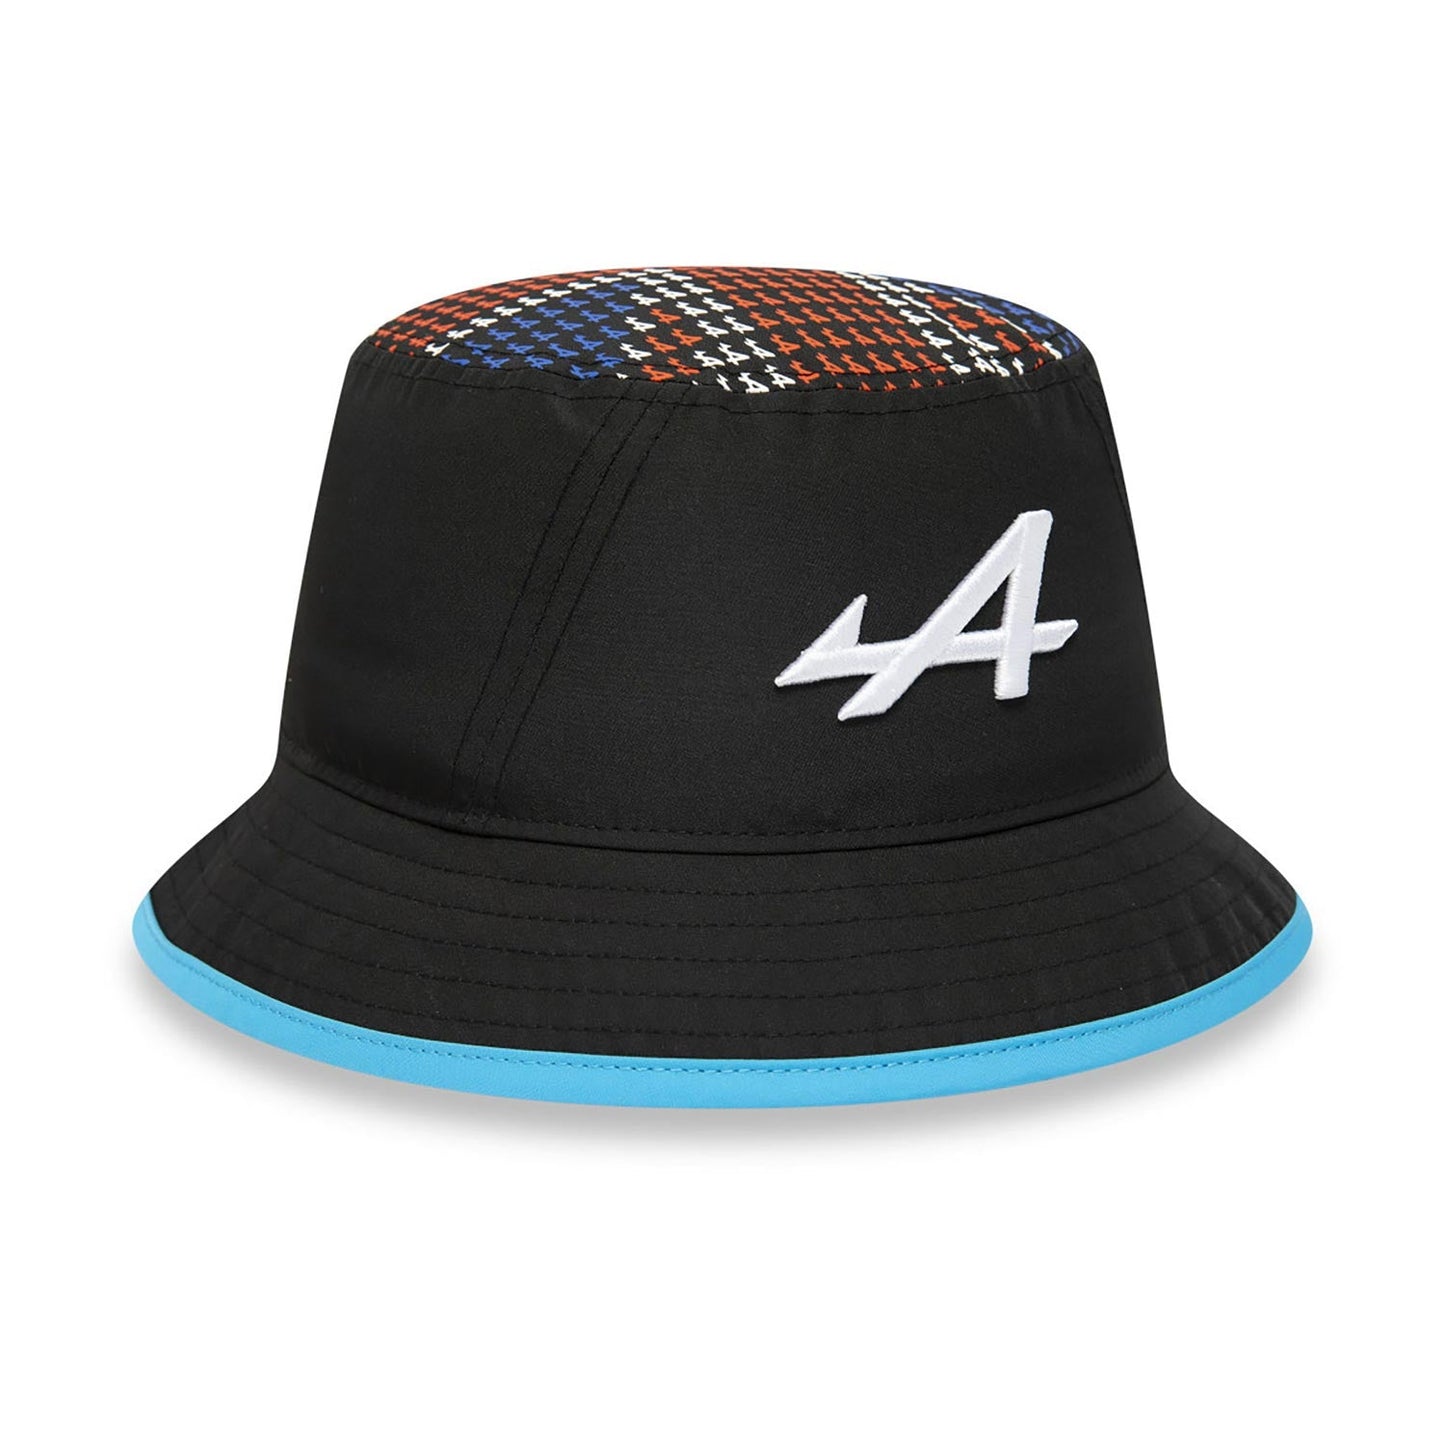 2023 Alpine F1 Mens Silverstone Traveller Bucket Hat